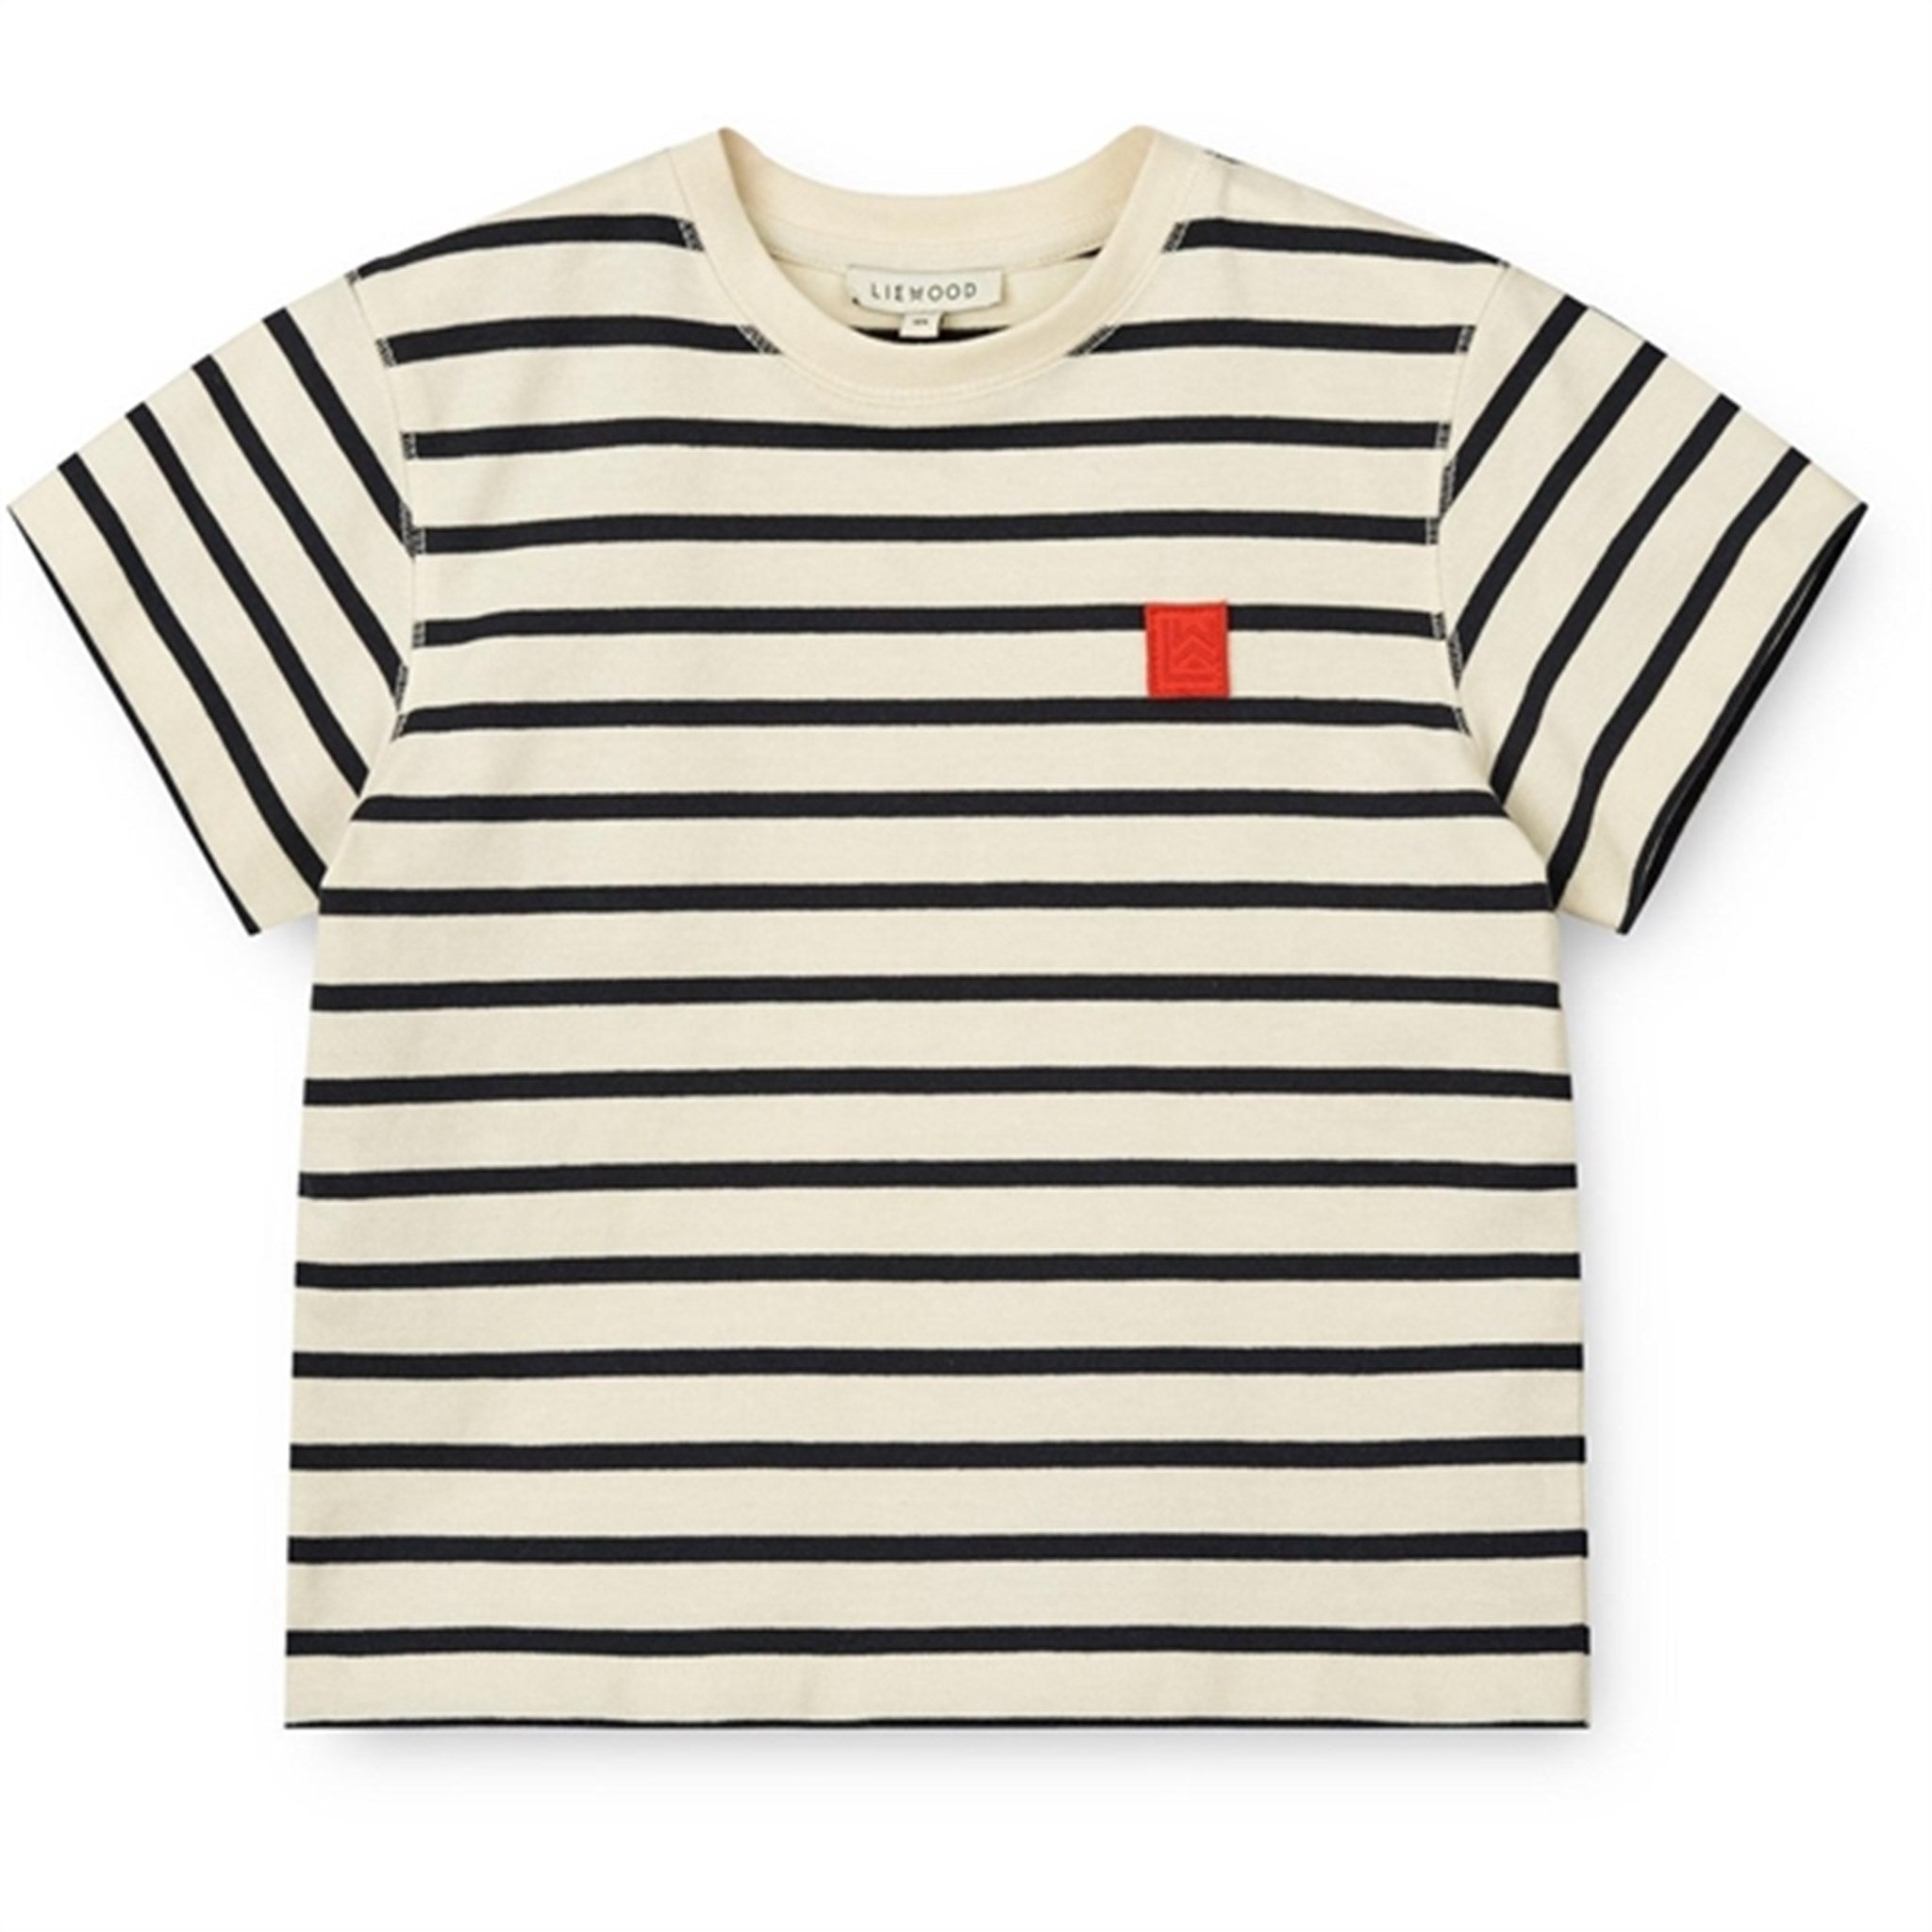 Liewood Y/D Stipes Classic Navy/Creme De La Creme Sixten Stripe T-shirt